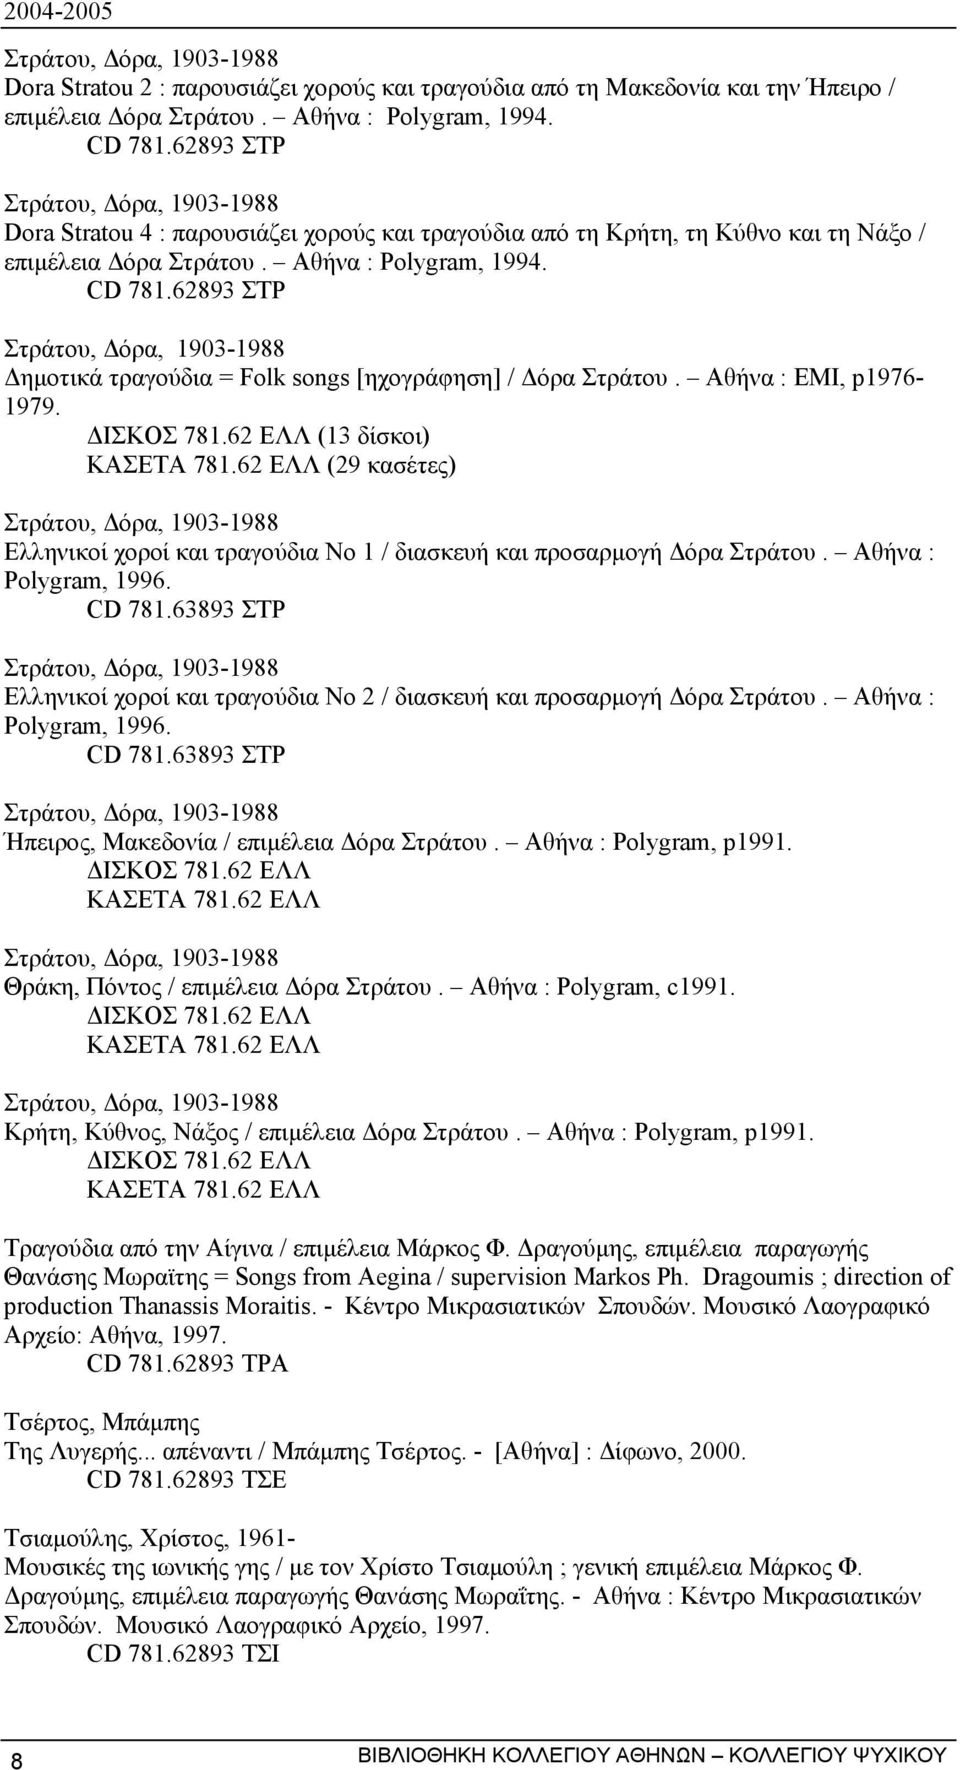 62893 ΣΤΡ Στράτου, όρα, 1903-1988 ηµοτικά τραγούδια = Folk songs [ηχογράφηση] / όρα Στράτου. Αθήνα : ΕΜΙ, p1976-1979. ΙΣΚΟΣ 781.62 ΕΛΛ (13 δίσκοι) ΚΑΣΕΤΑ 781.